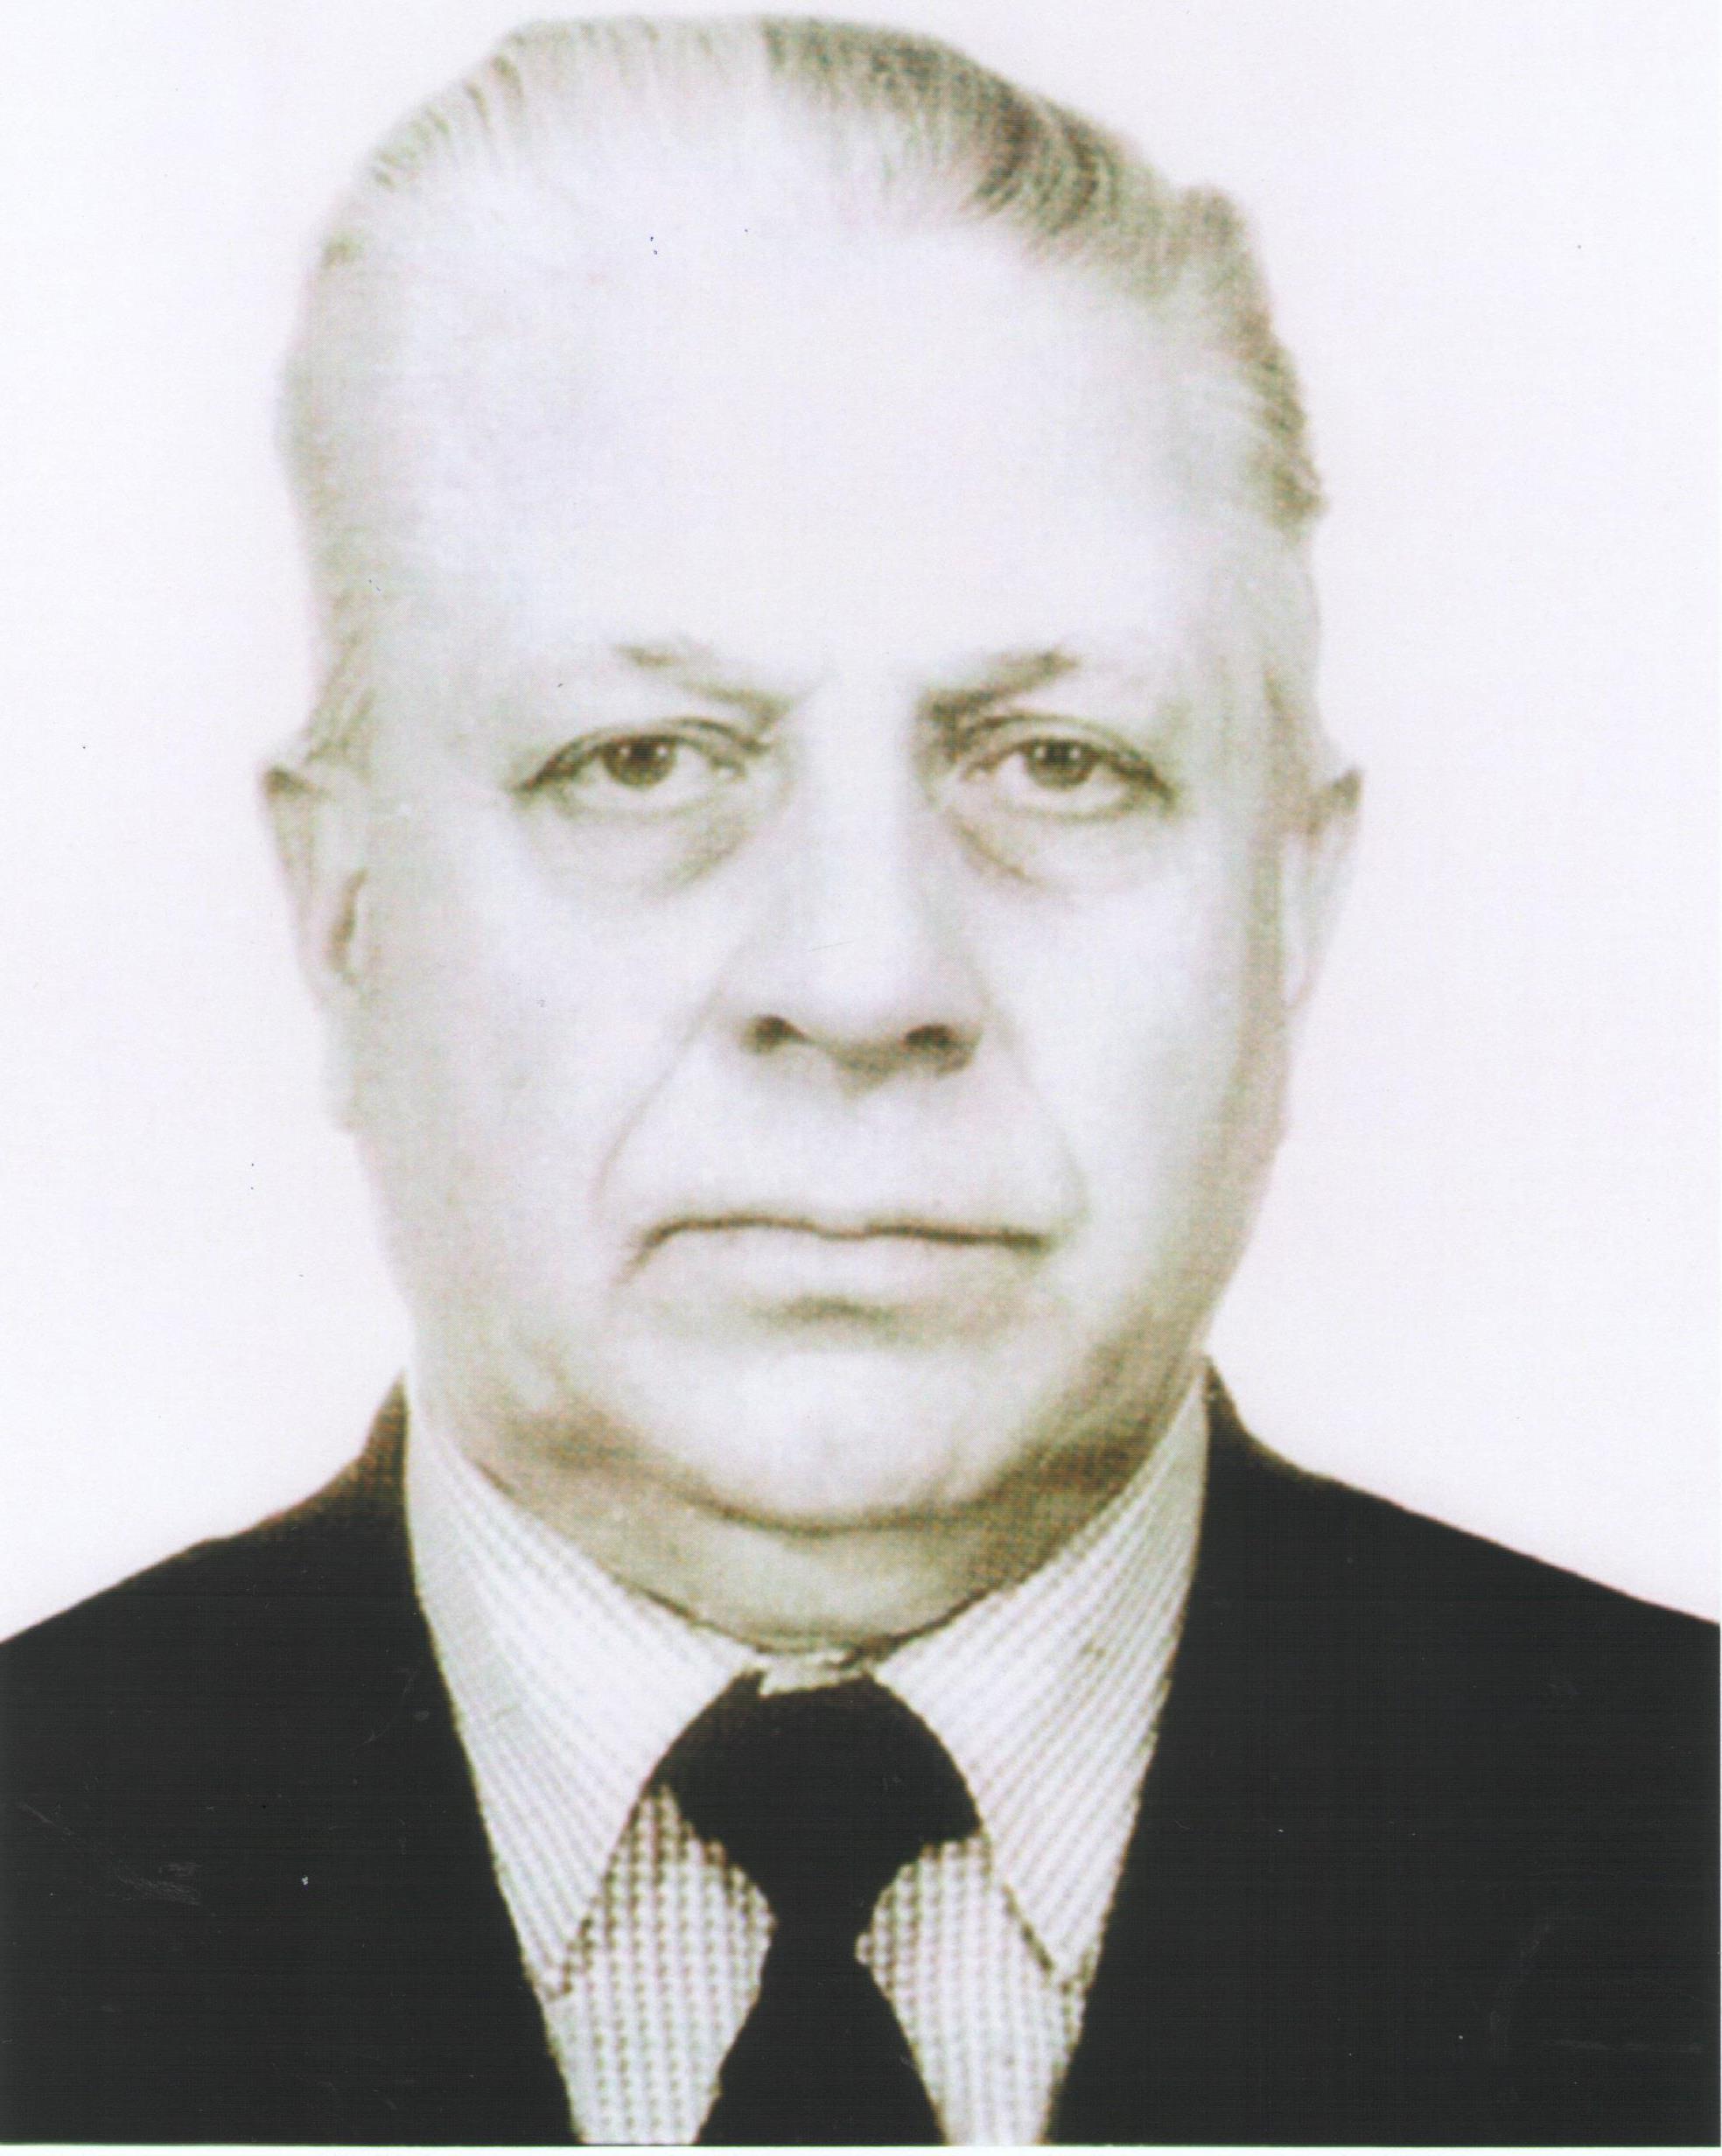 Баранов Иван Петрович